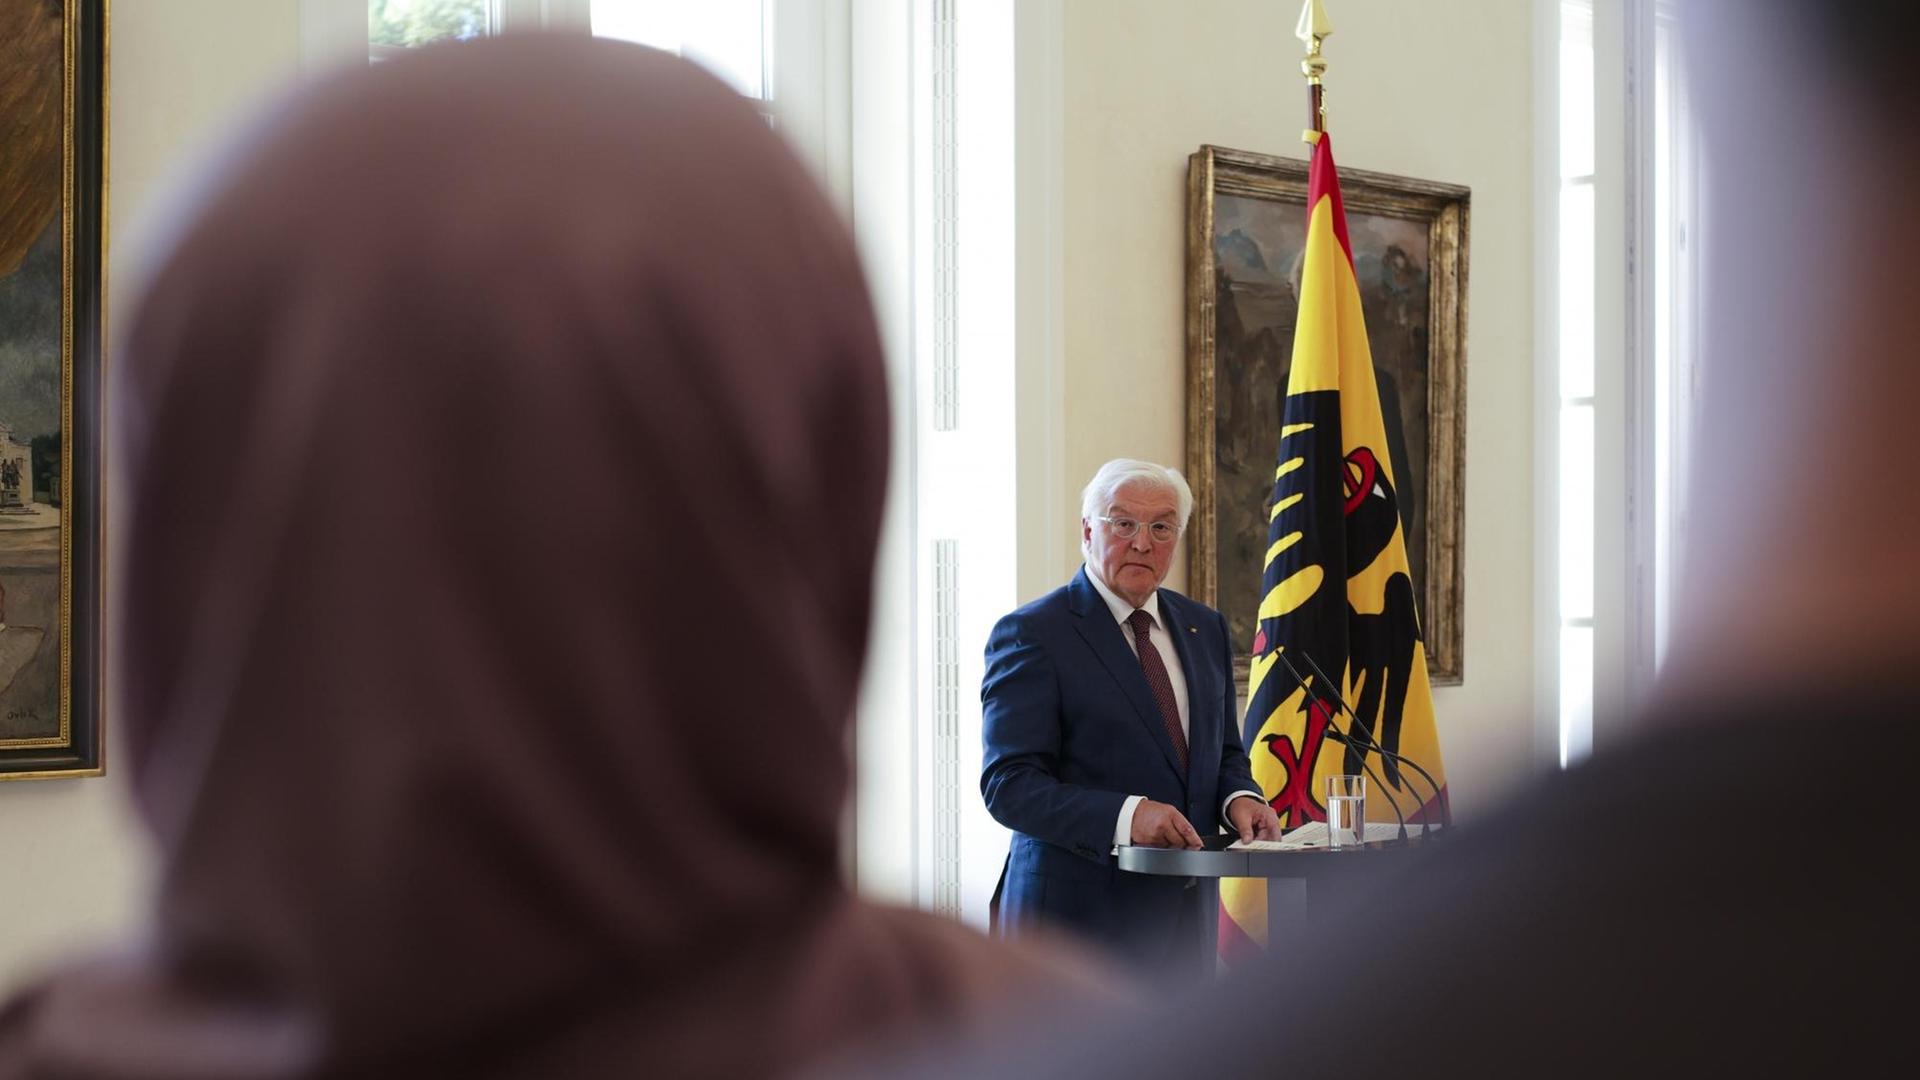 Bundespräsident Steinmeier steht am Rednerpult, im Vordergrund des Bildes ist eine Frau mit Kopftuch von hinten zu sehen.